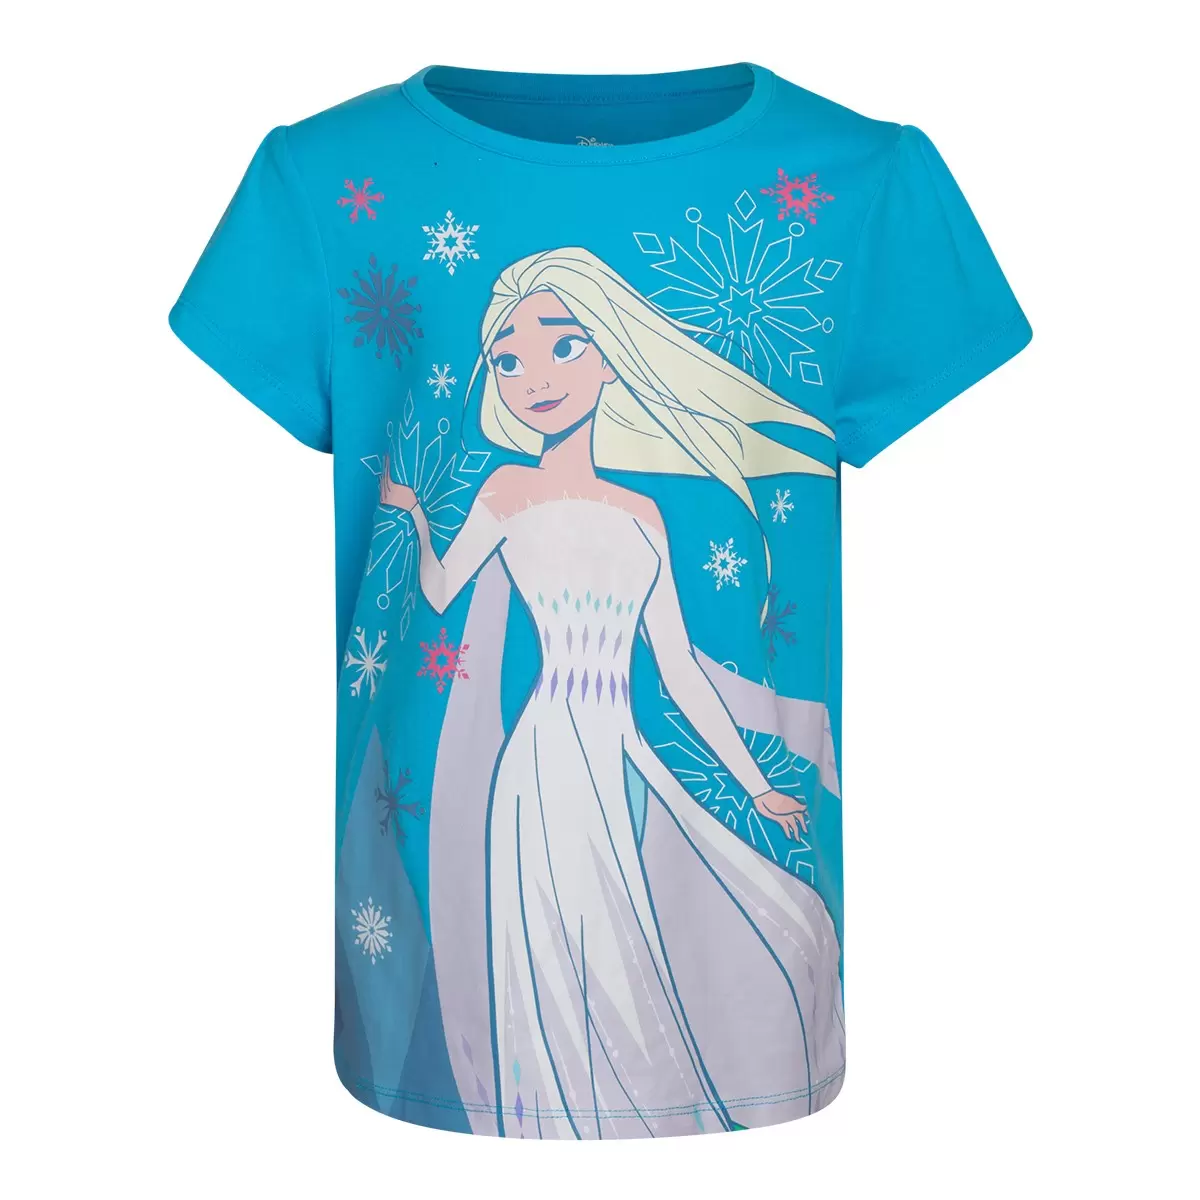 兒童卡通圖案短袖上衣四件組 Frozen 2 6T